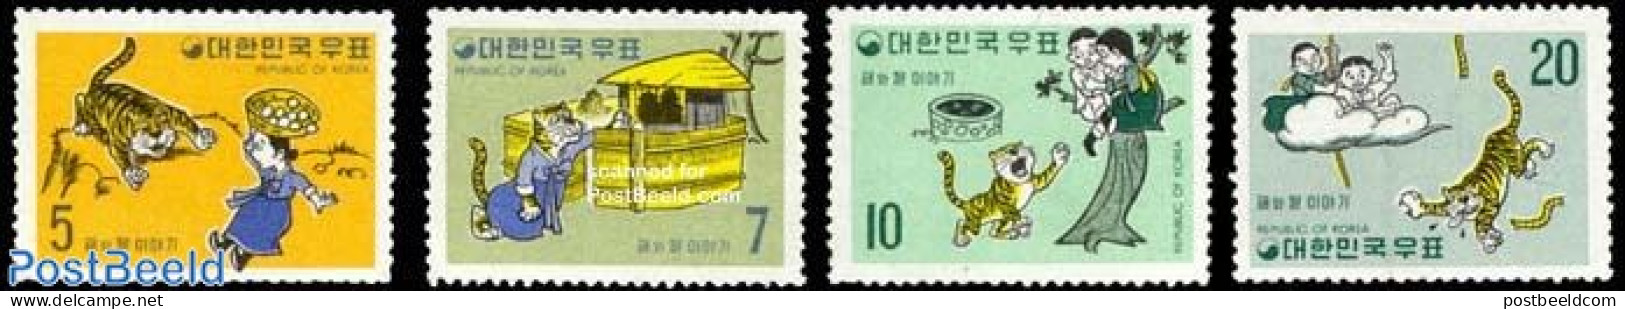 Korea, South 1970 Fairy Tales 4v, Mint NH, Nature - Cat Family - Art - Fairytales - Märchen, Sagen & Legenden